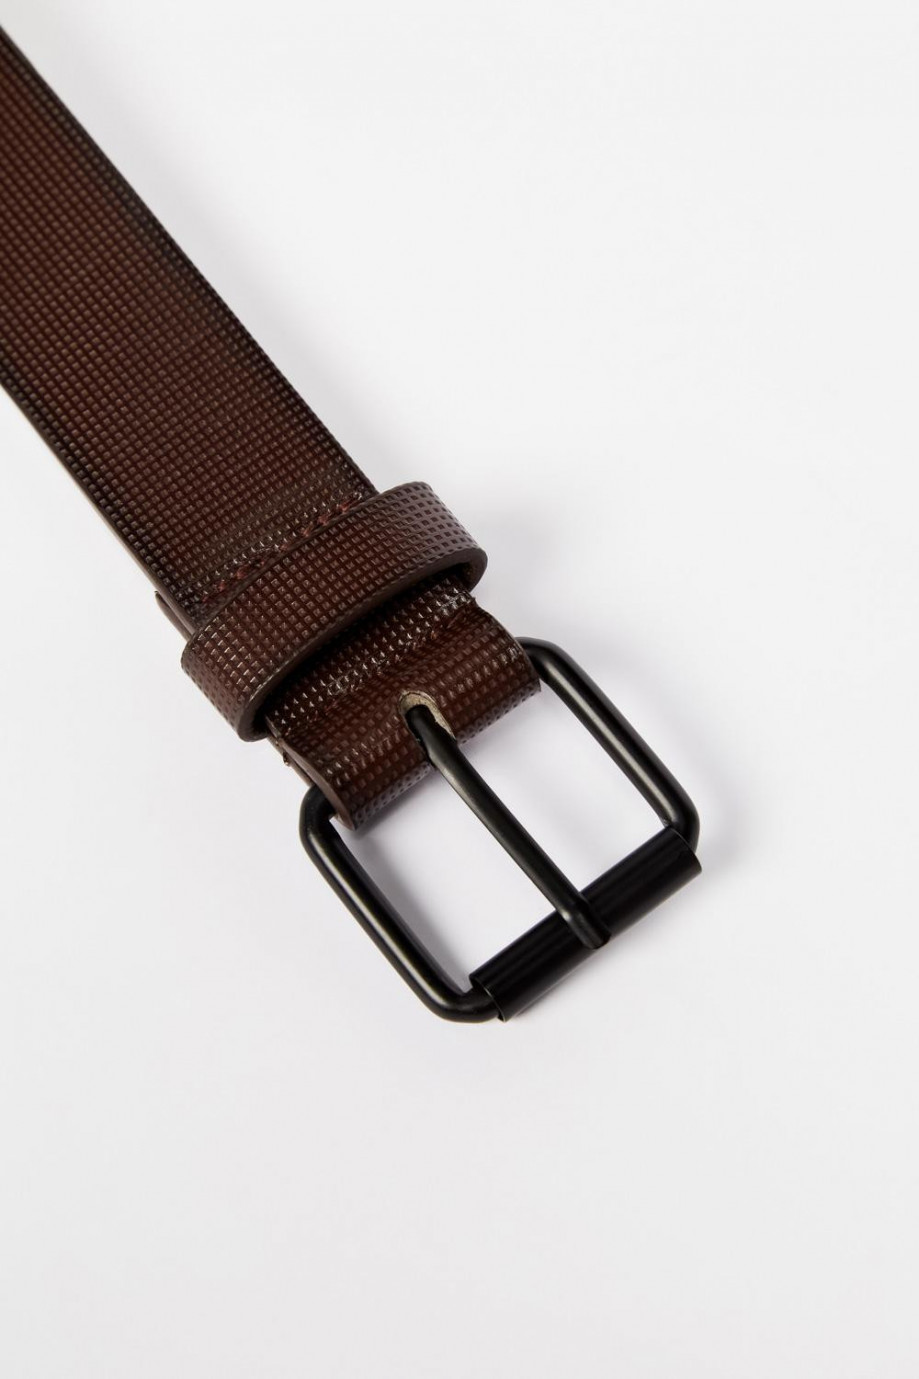 Cinturón café oscuro con textura de puntos y hebilla cuadrada